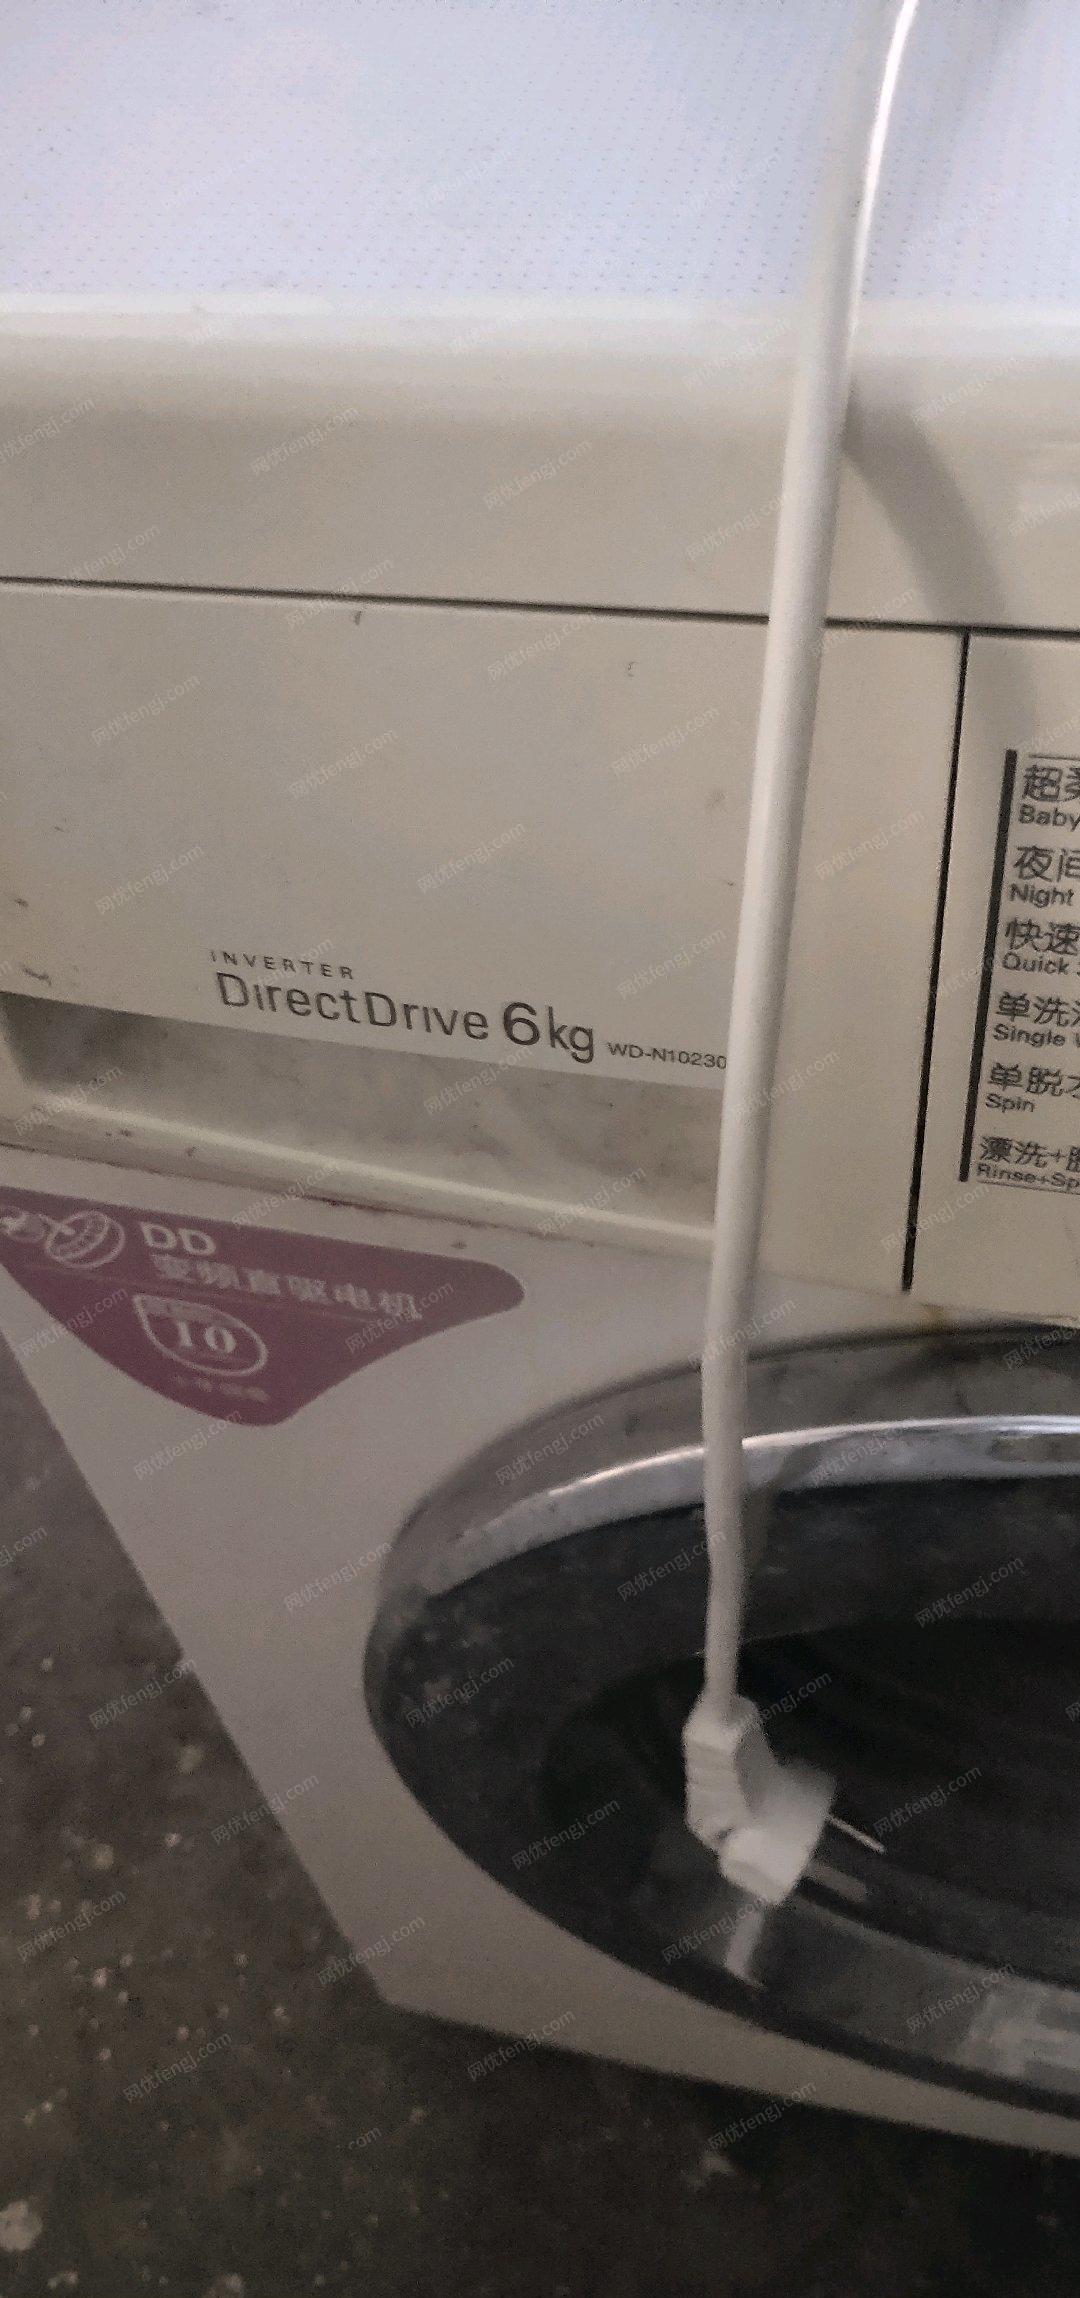 上海普陀区处理二手滚筒洗衣机